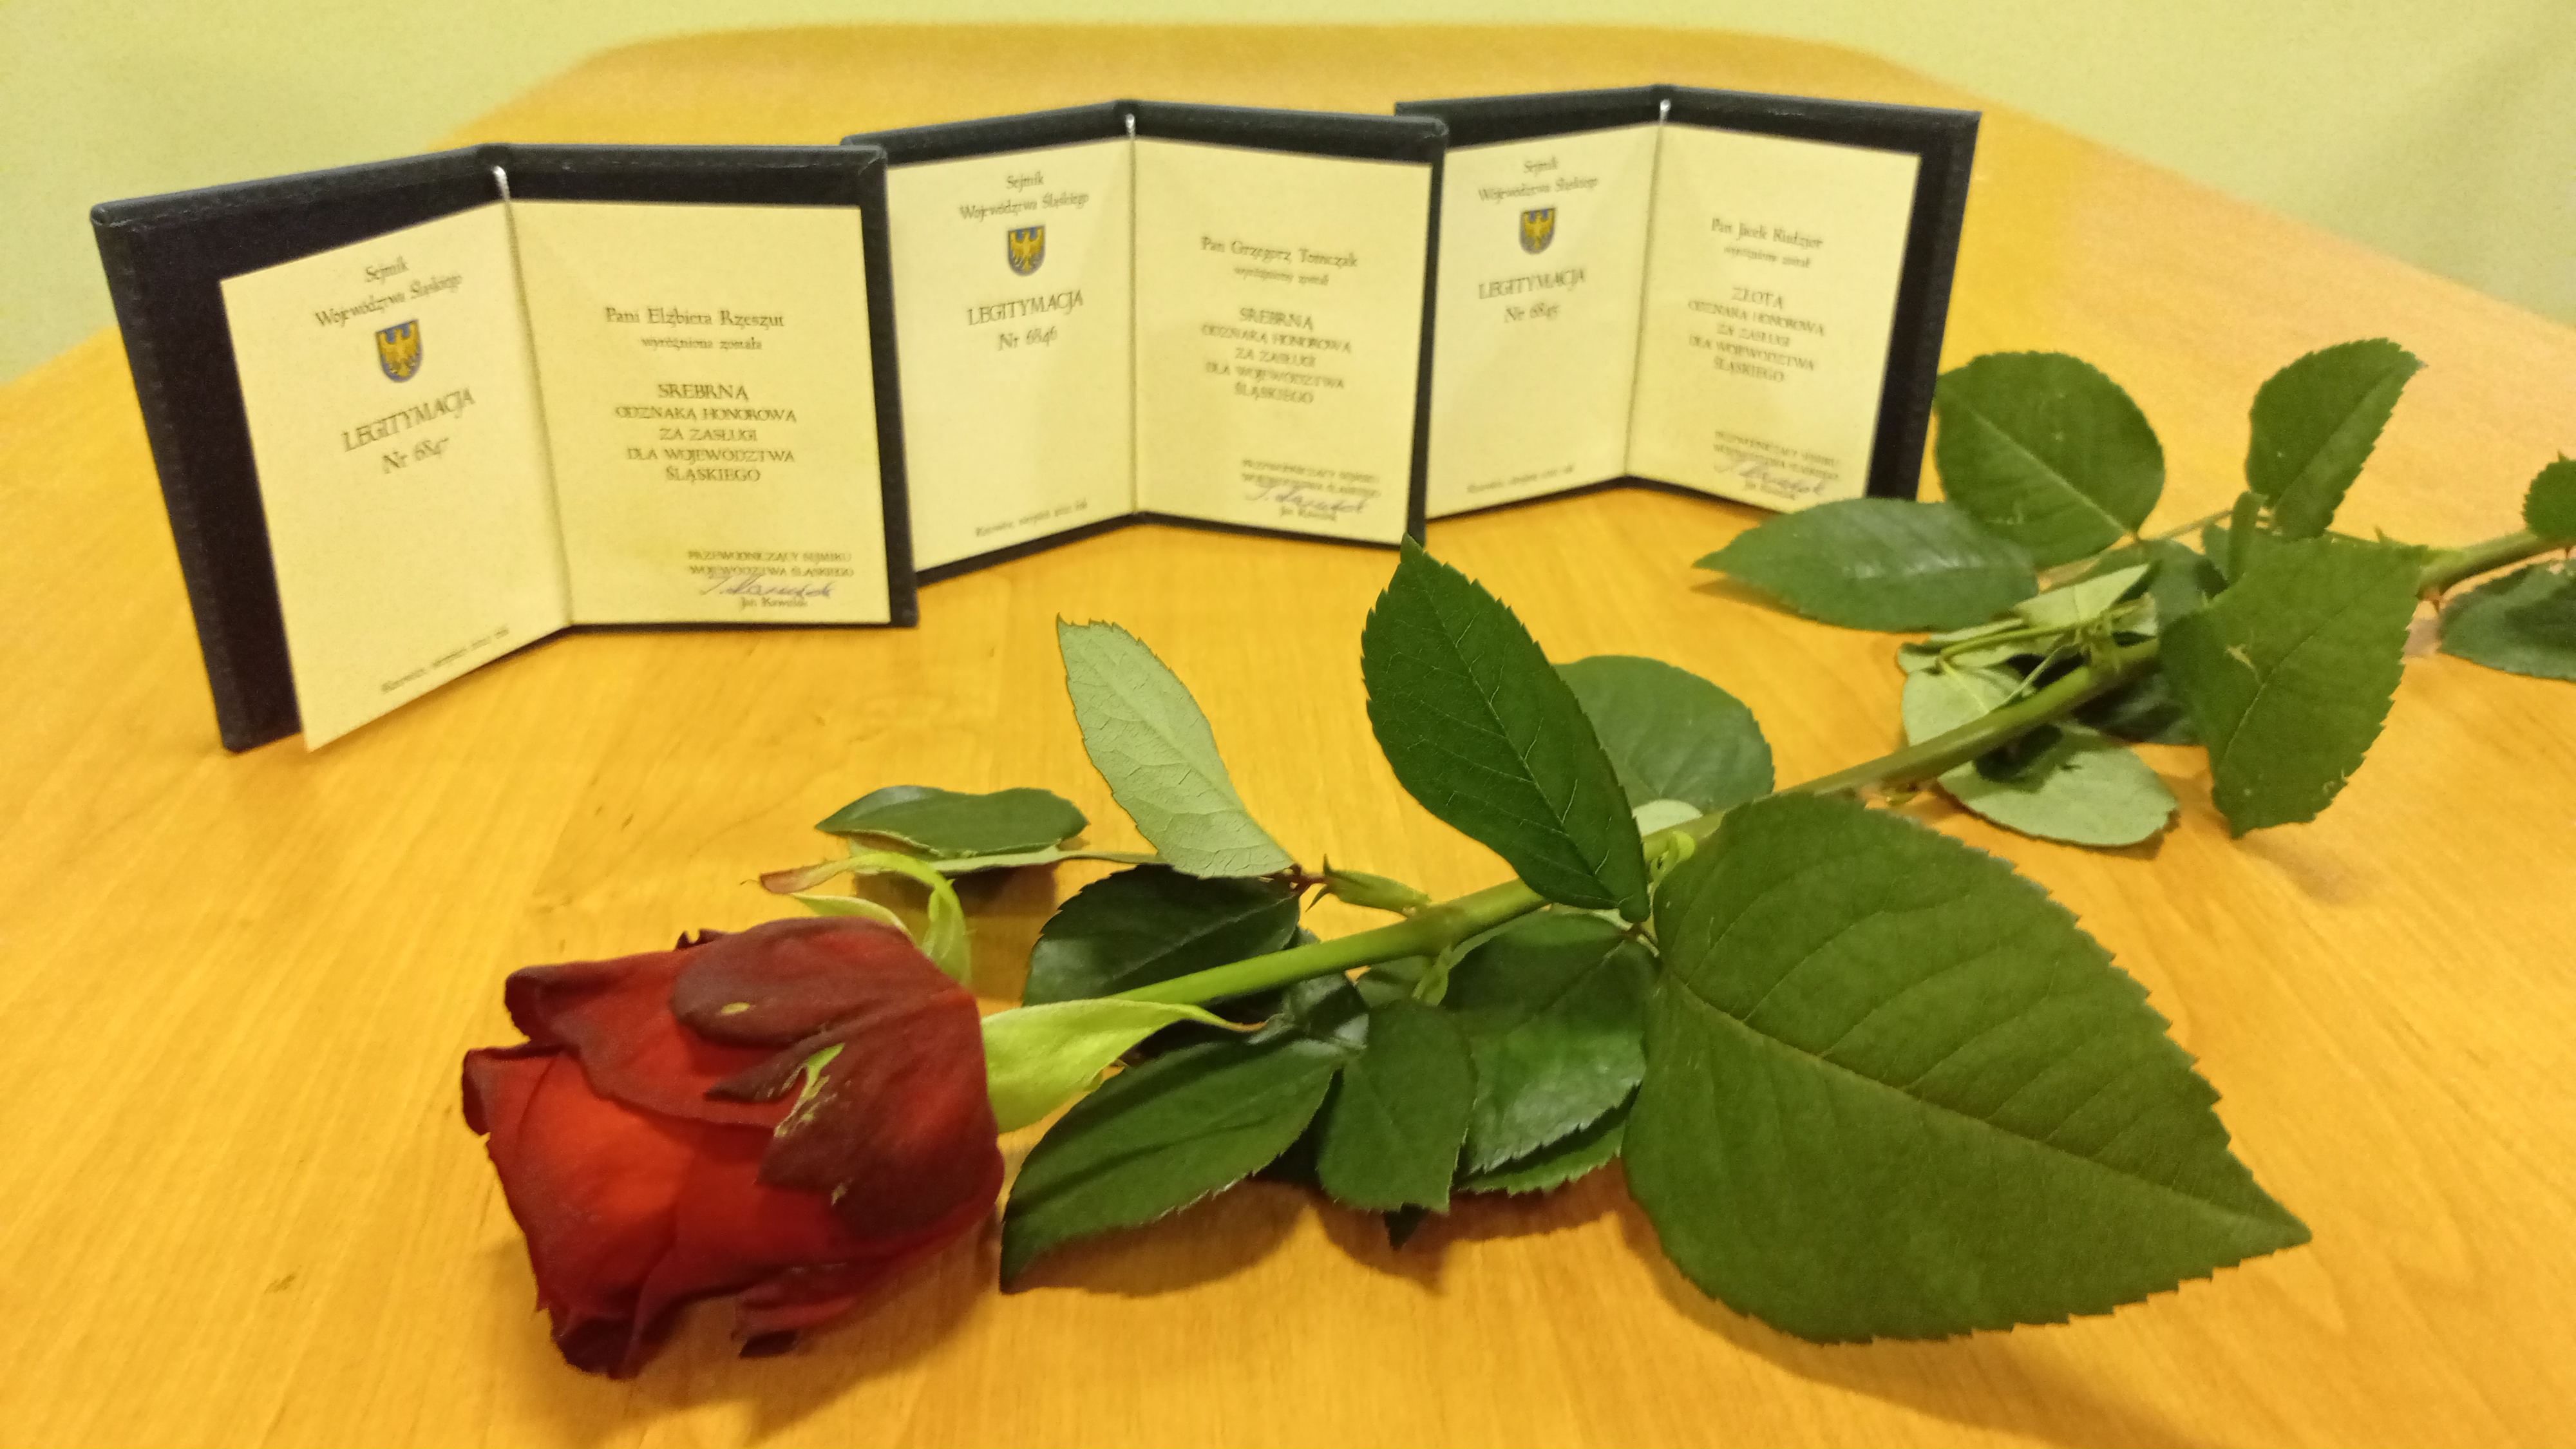 Zdjęcie przedstawiające czerwoną różę oraz trzy poświadczenia otrzymania odznak.